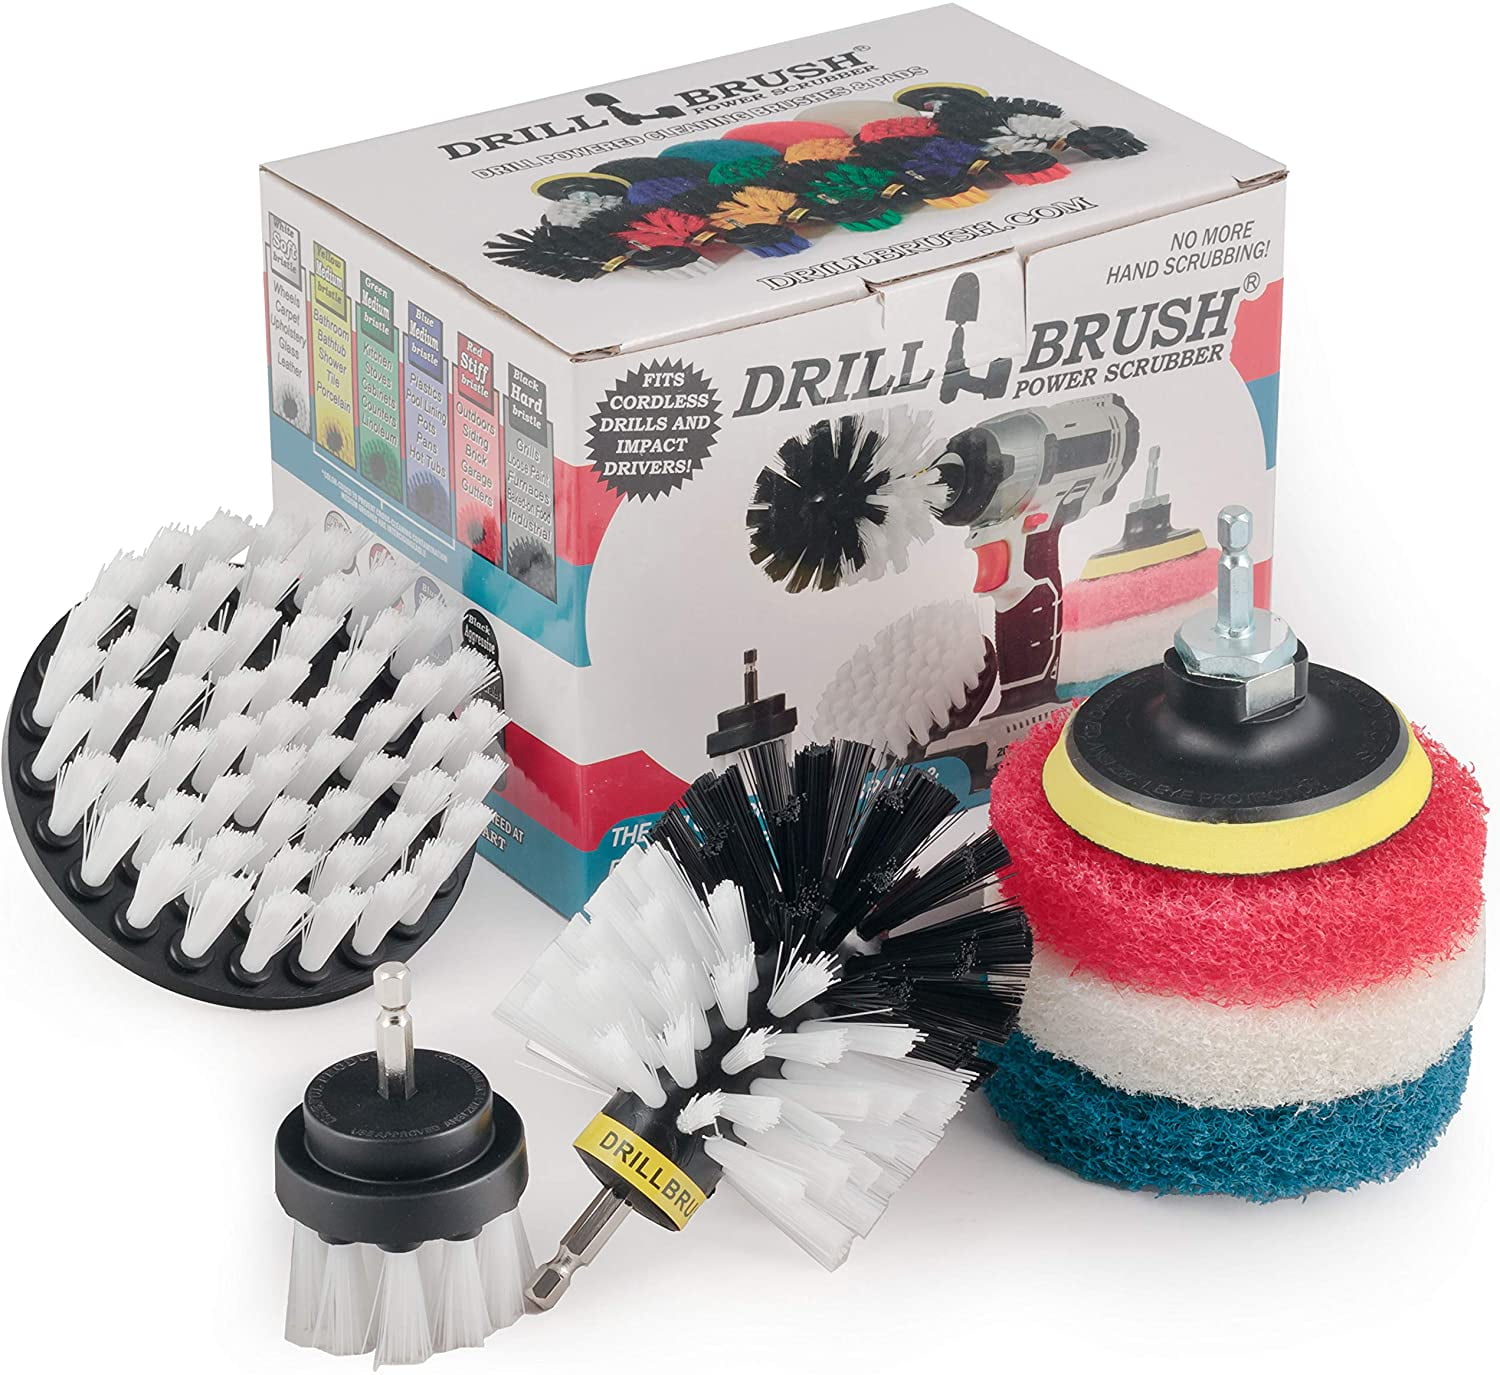 Drillbrush Rotary Drill Brush Cordless Scrubber Auto Brush Cleaning Detail New 